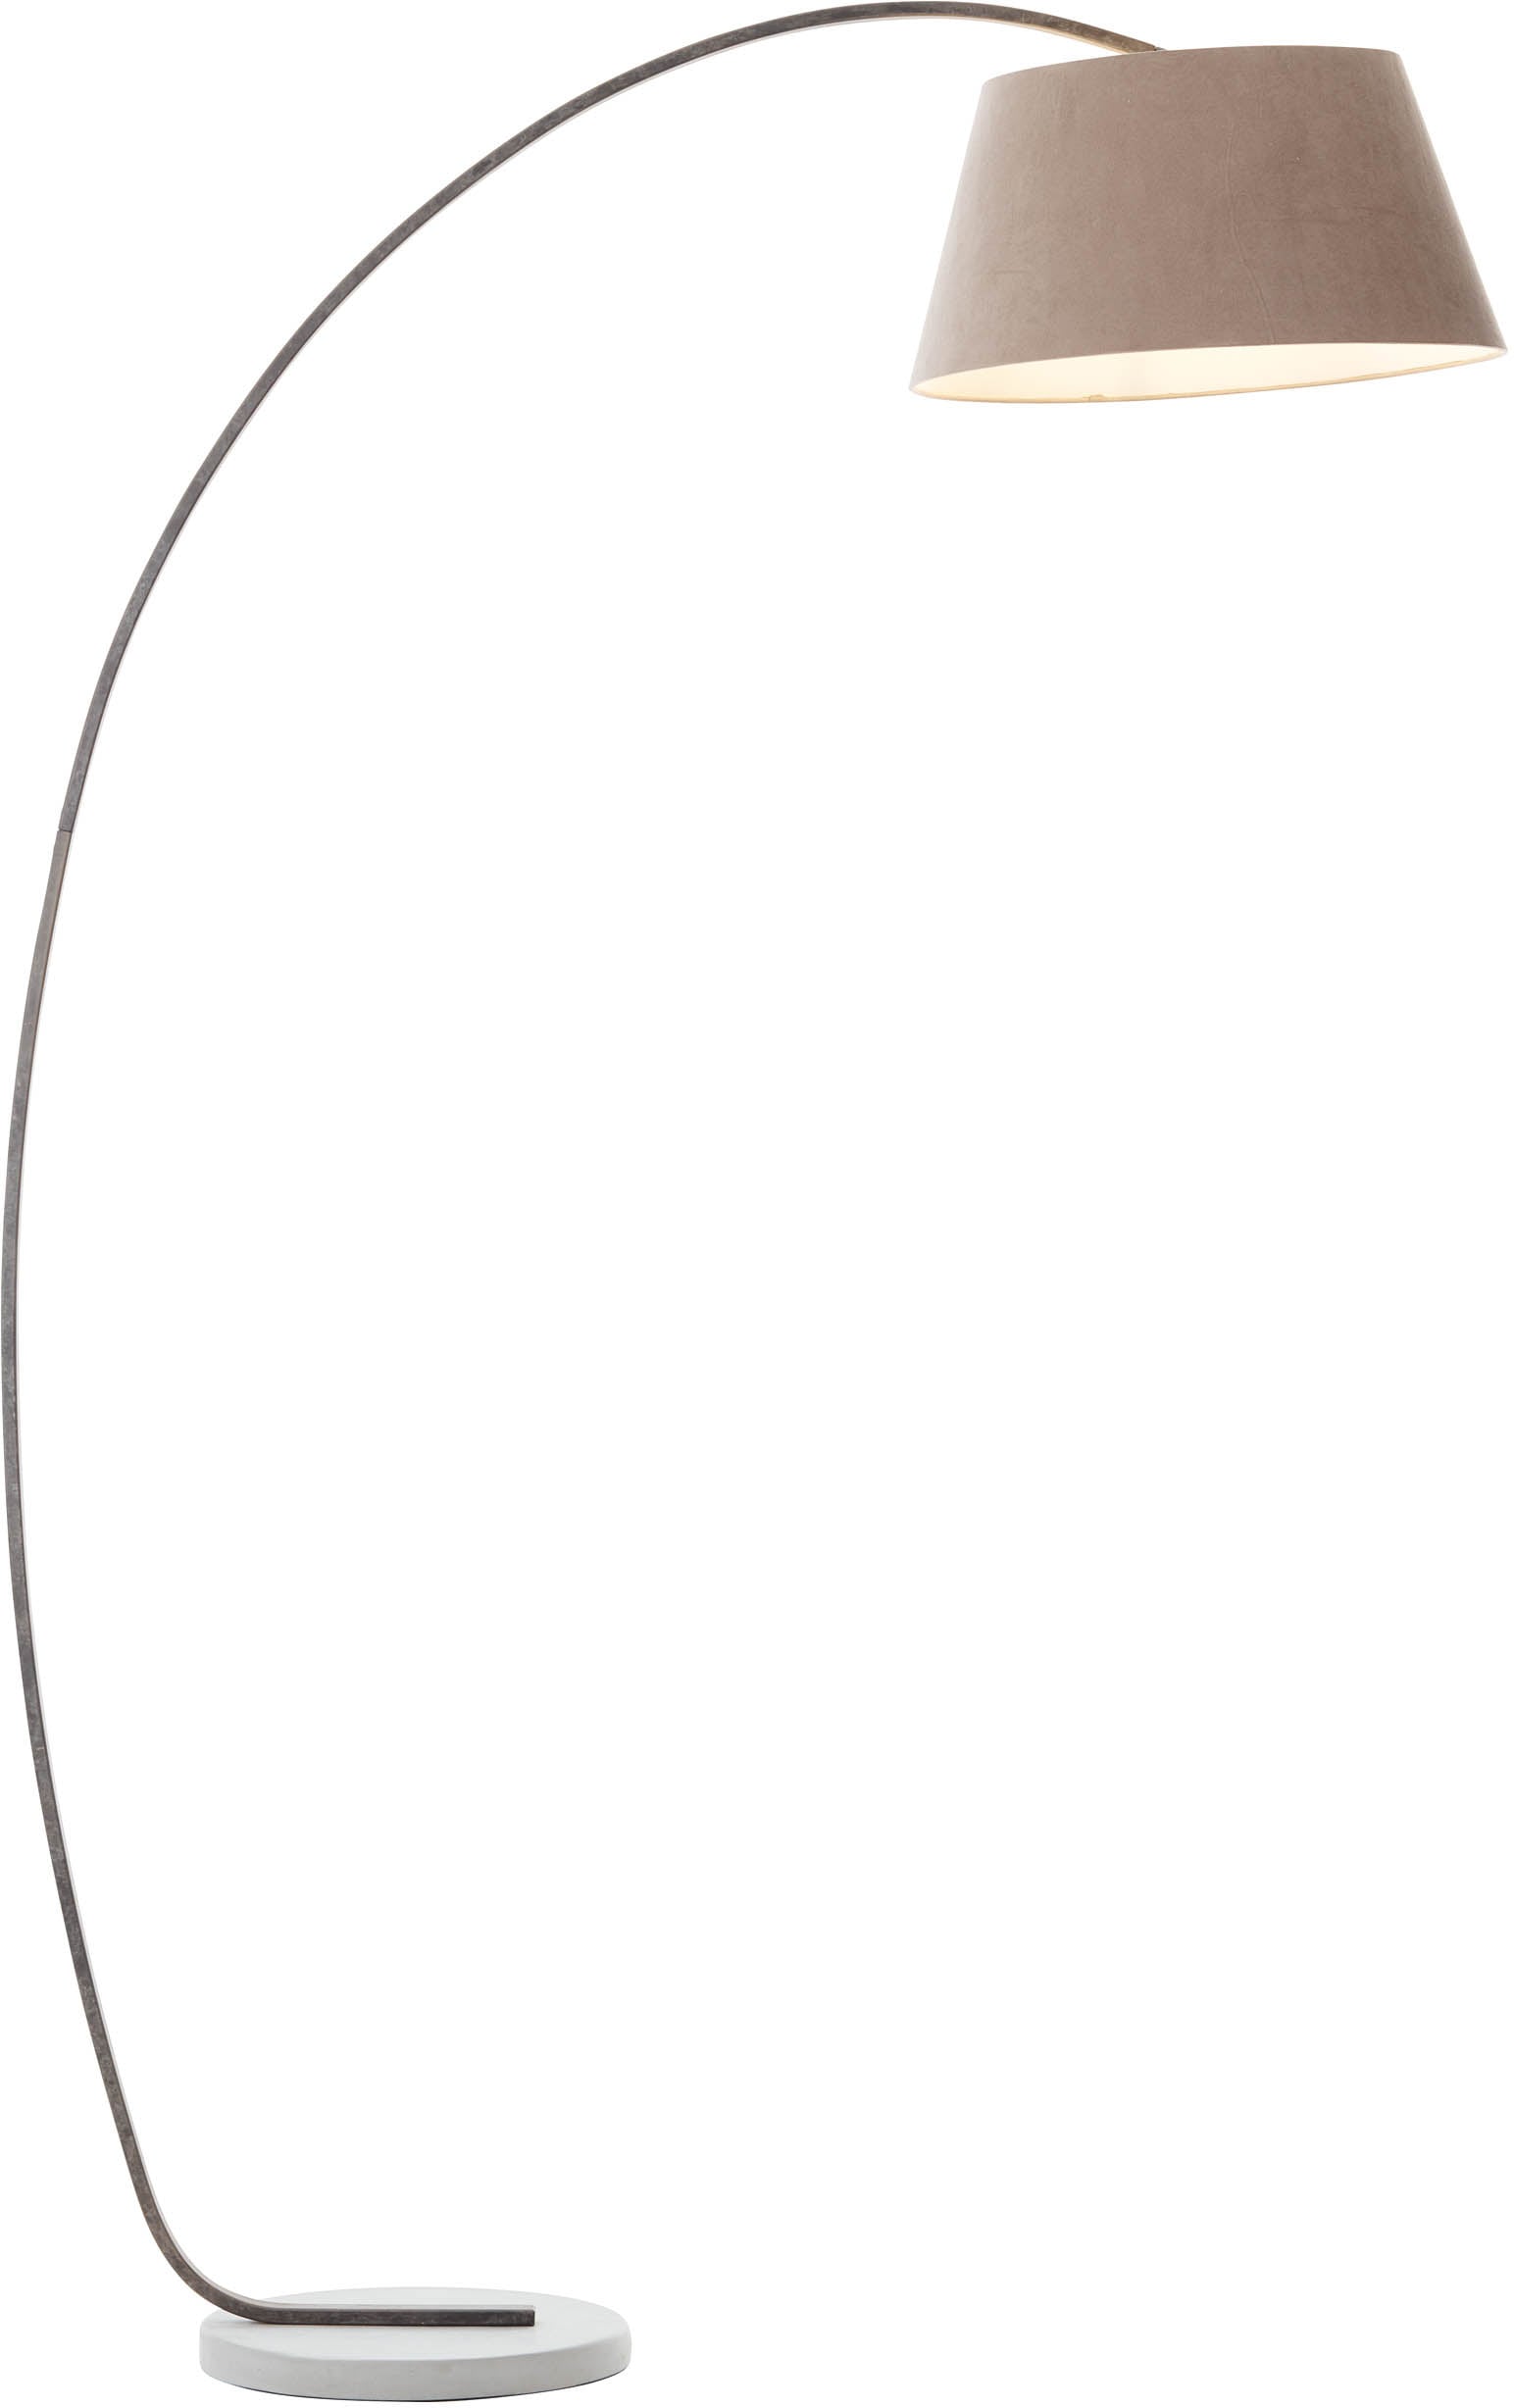 Brilliant Bogenlampe »Brok«, 1 flammig, Leuchtmittel E27 | ohne Leuchtmittel, 196 cm Höhe, 121 cm Ausl., E27, schwenkbar, Beton/Metall/Textil, taupe